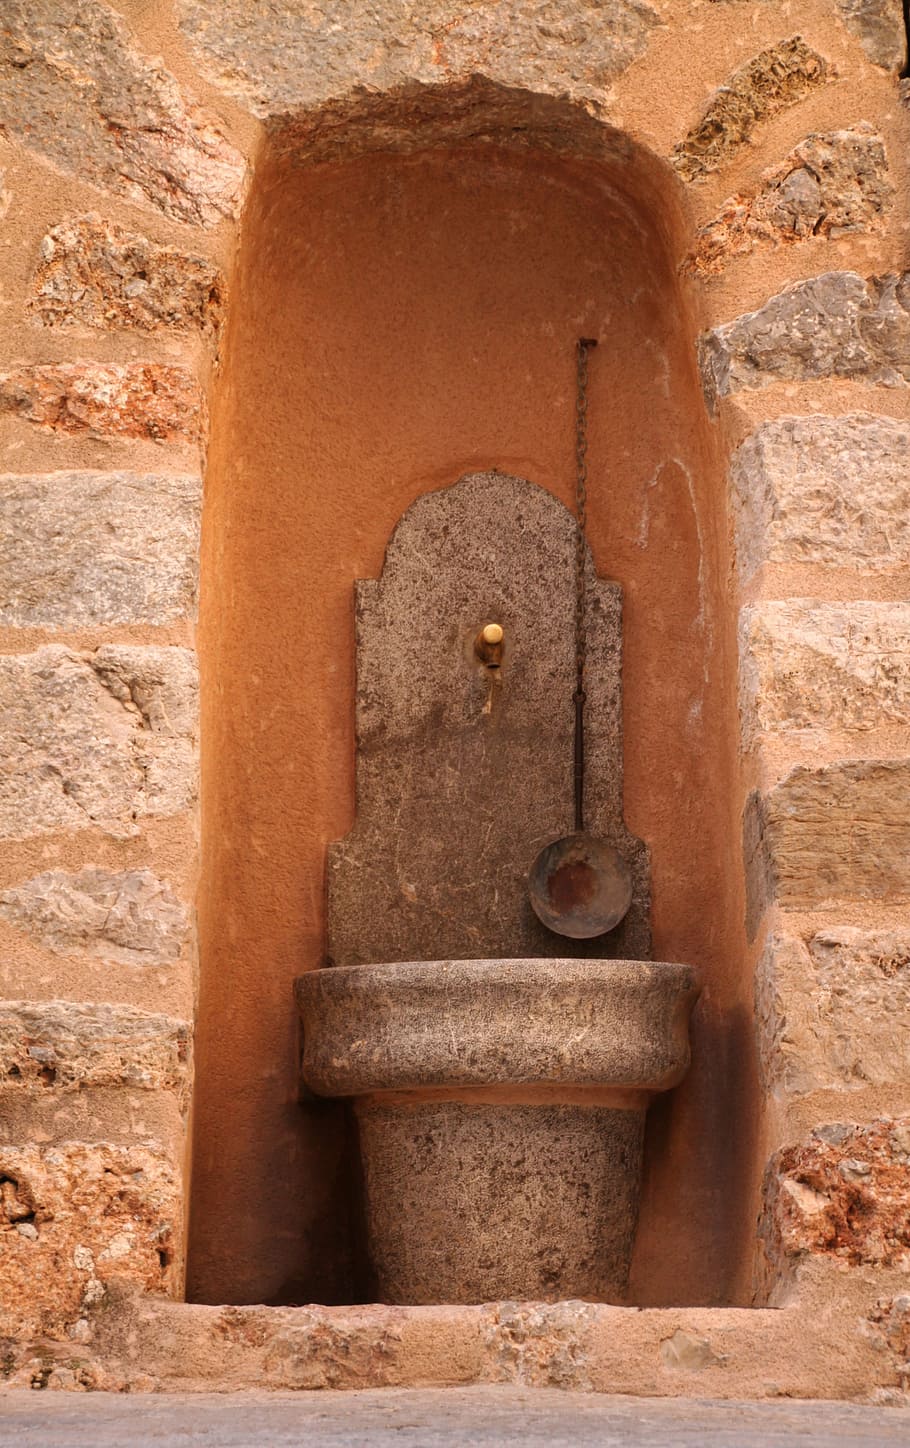 fuente, cuenca, fuente de agua, arquitectura, pared, ladrillo, piedra, muro de piedra, piedras, edificio